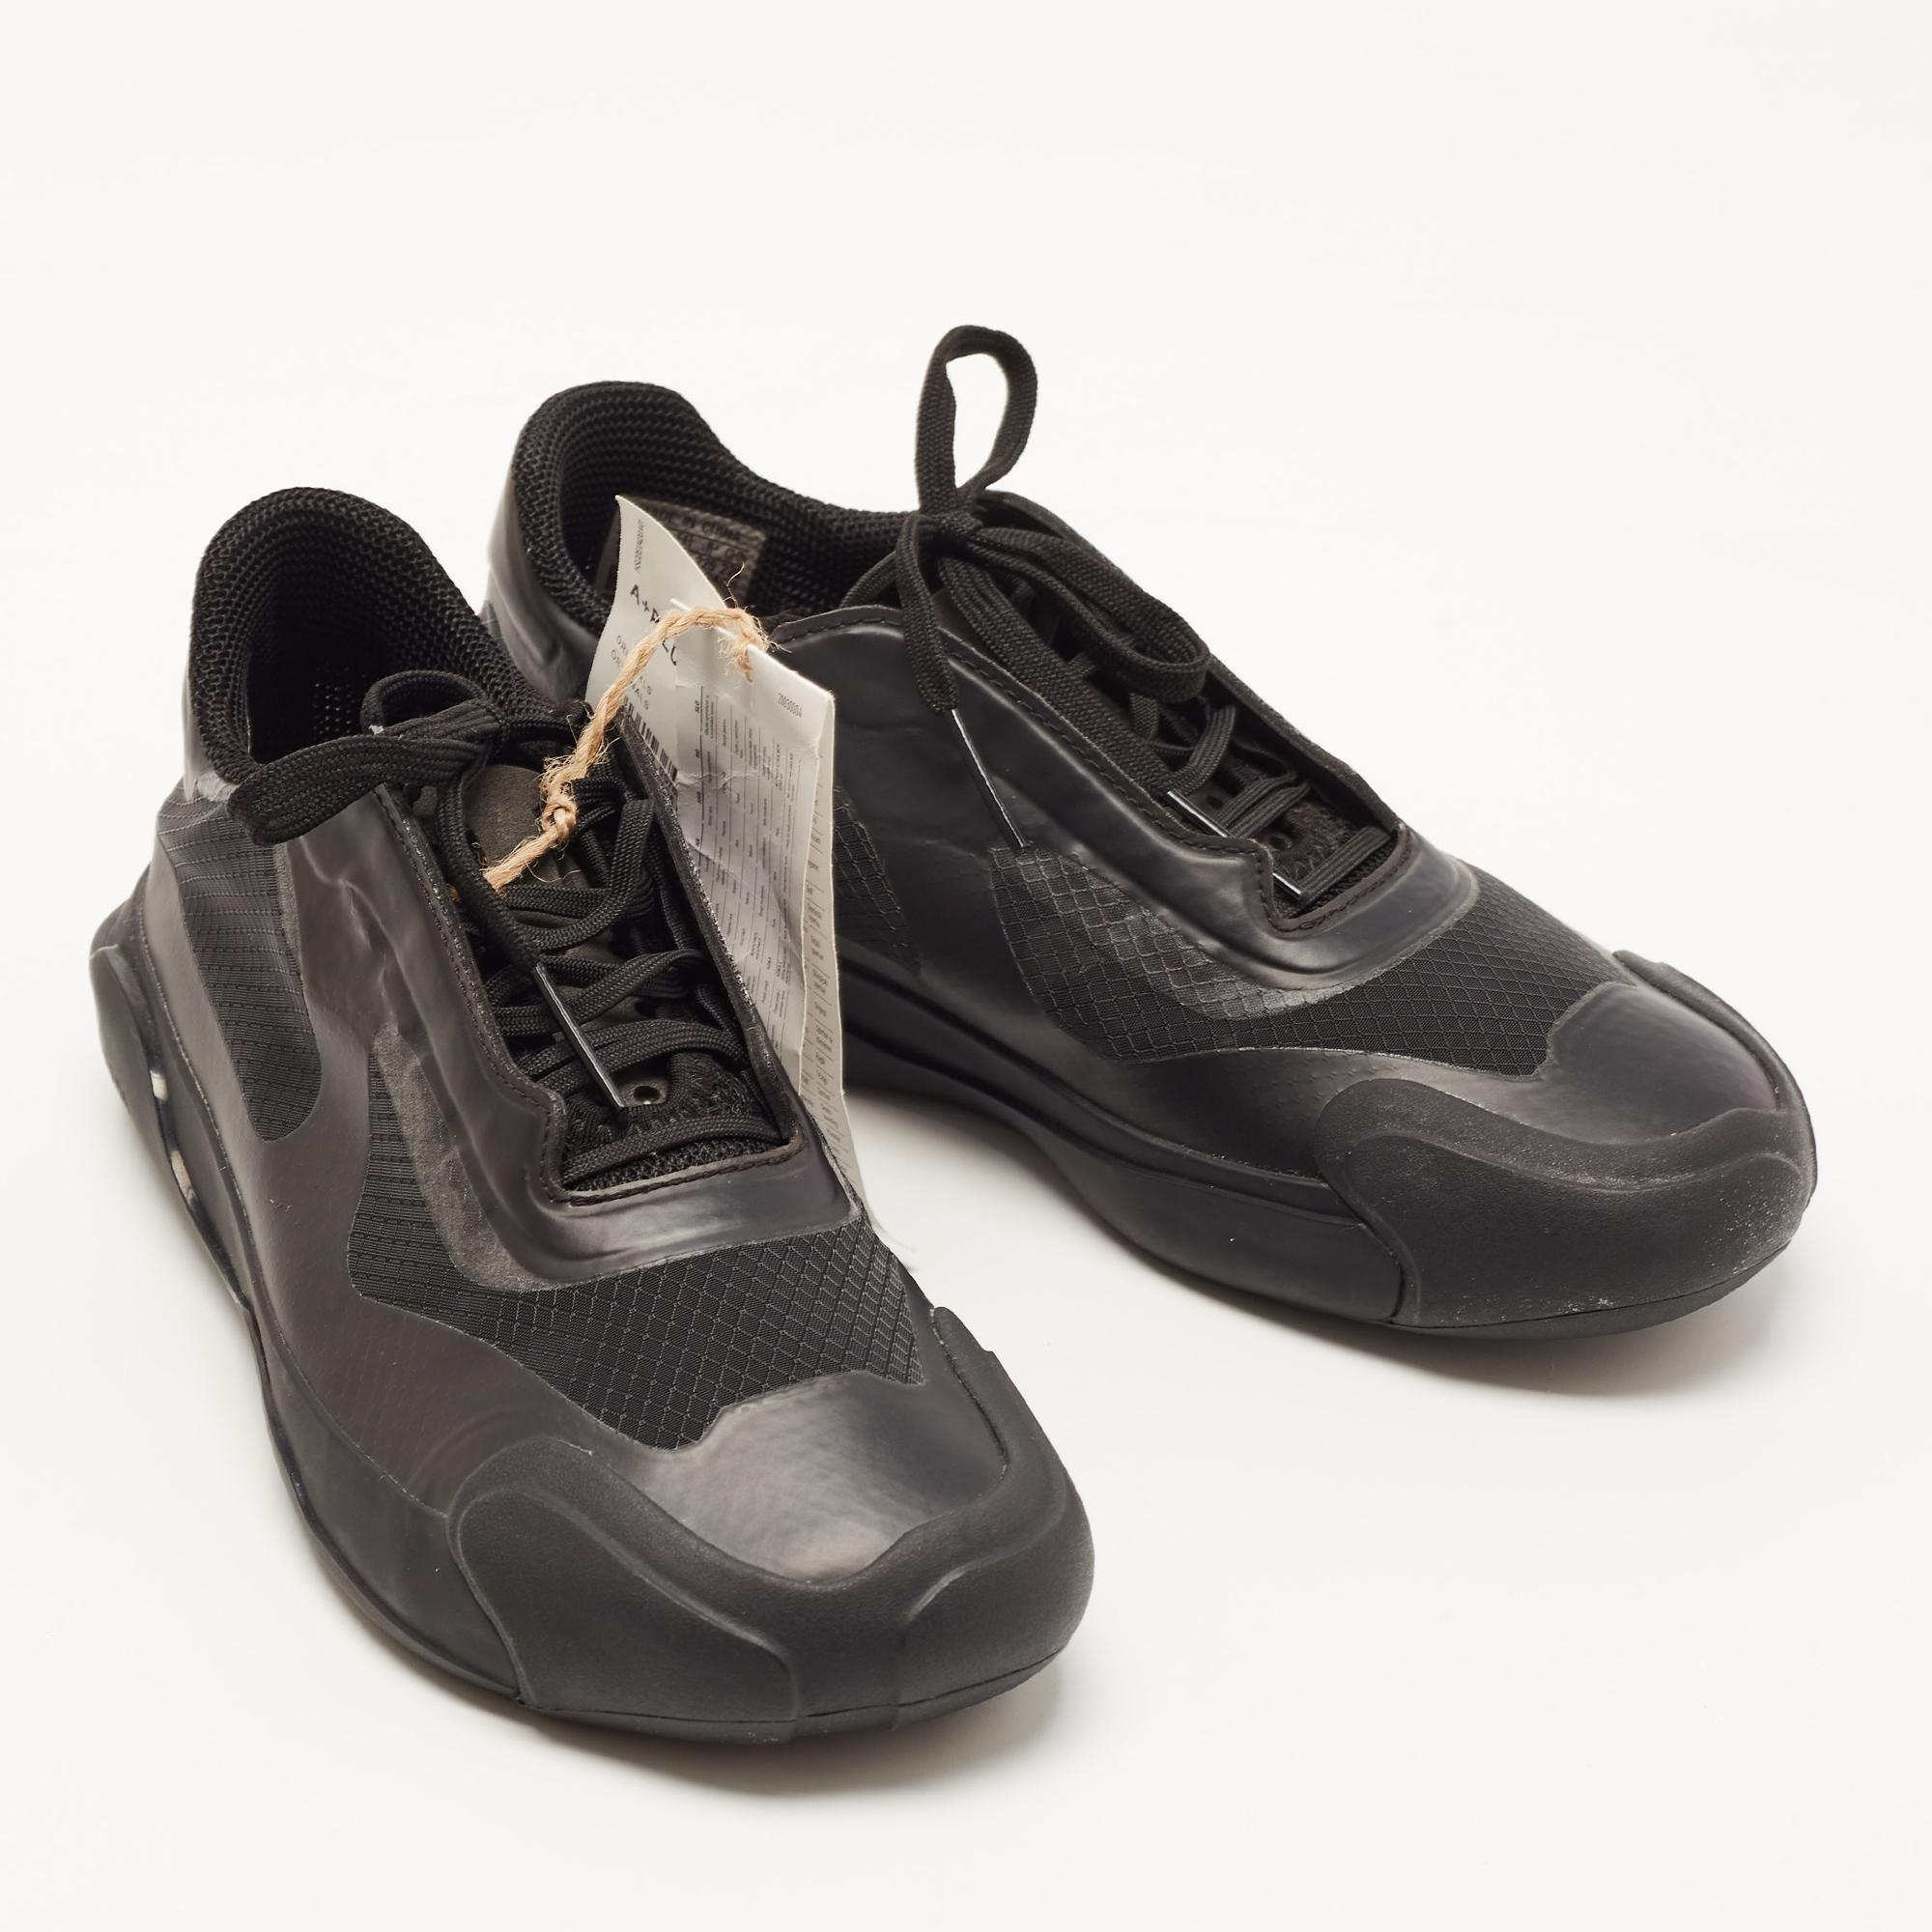 Adidas x Prada Black Mesh A+P Luna Sneakers Size 36 2/3 In New Condition For Sale In Dubai, Al Qouz 2